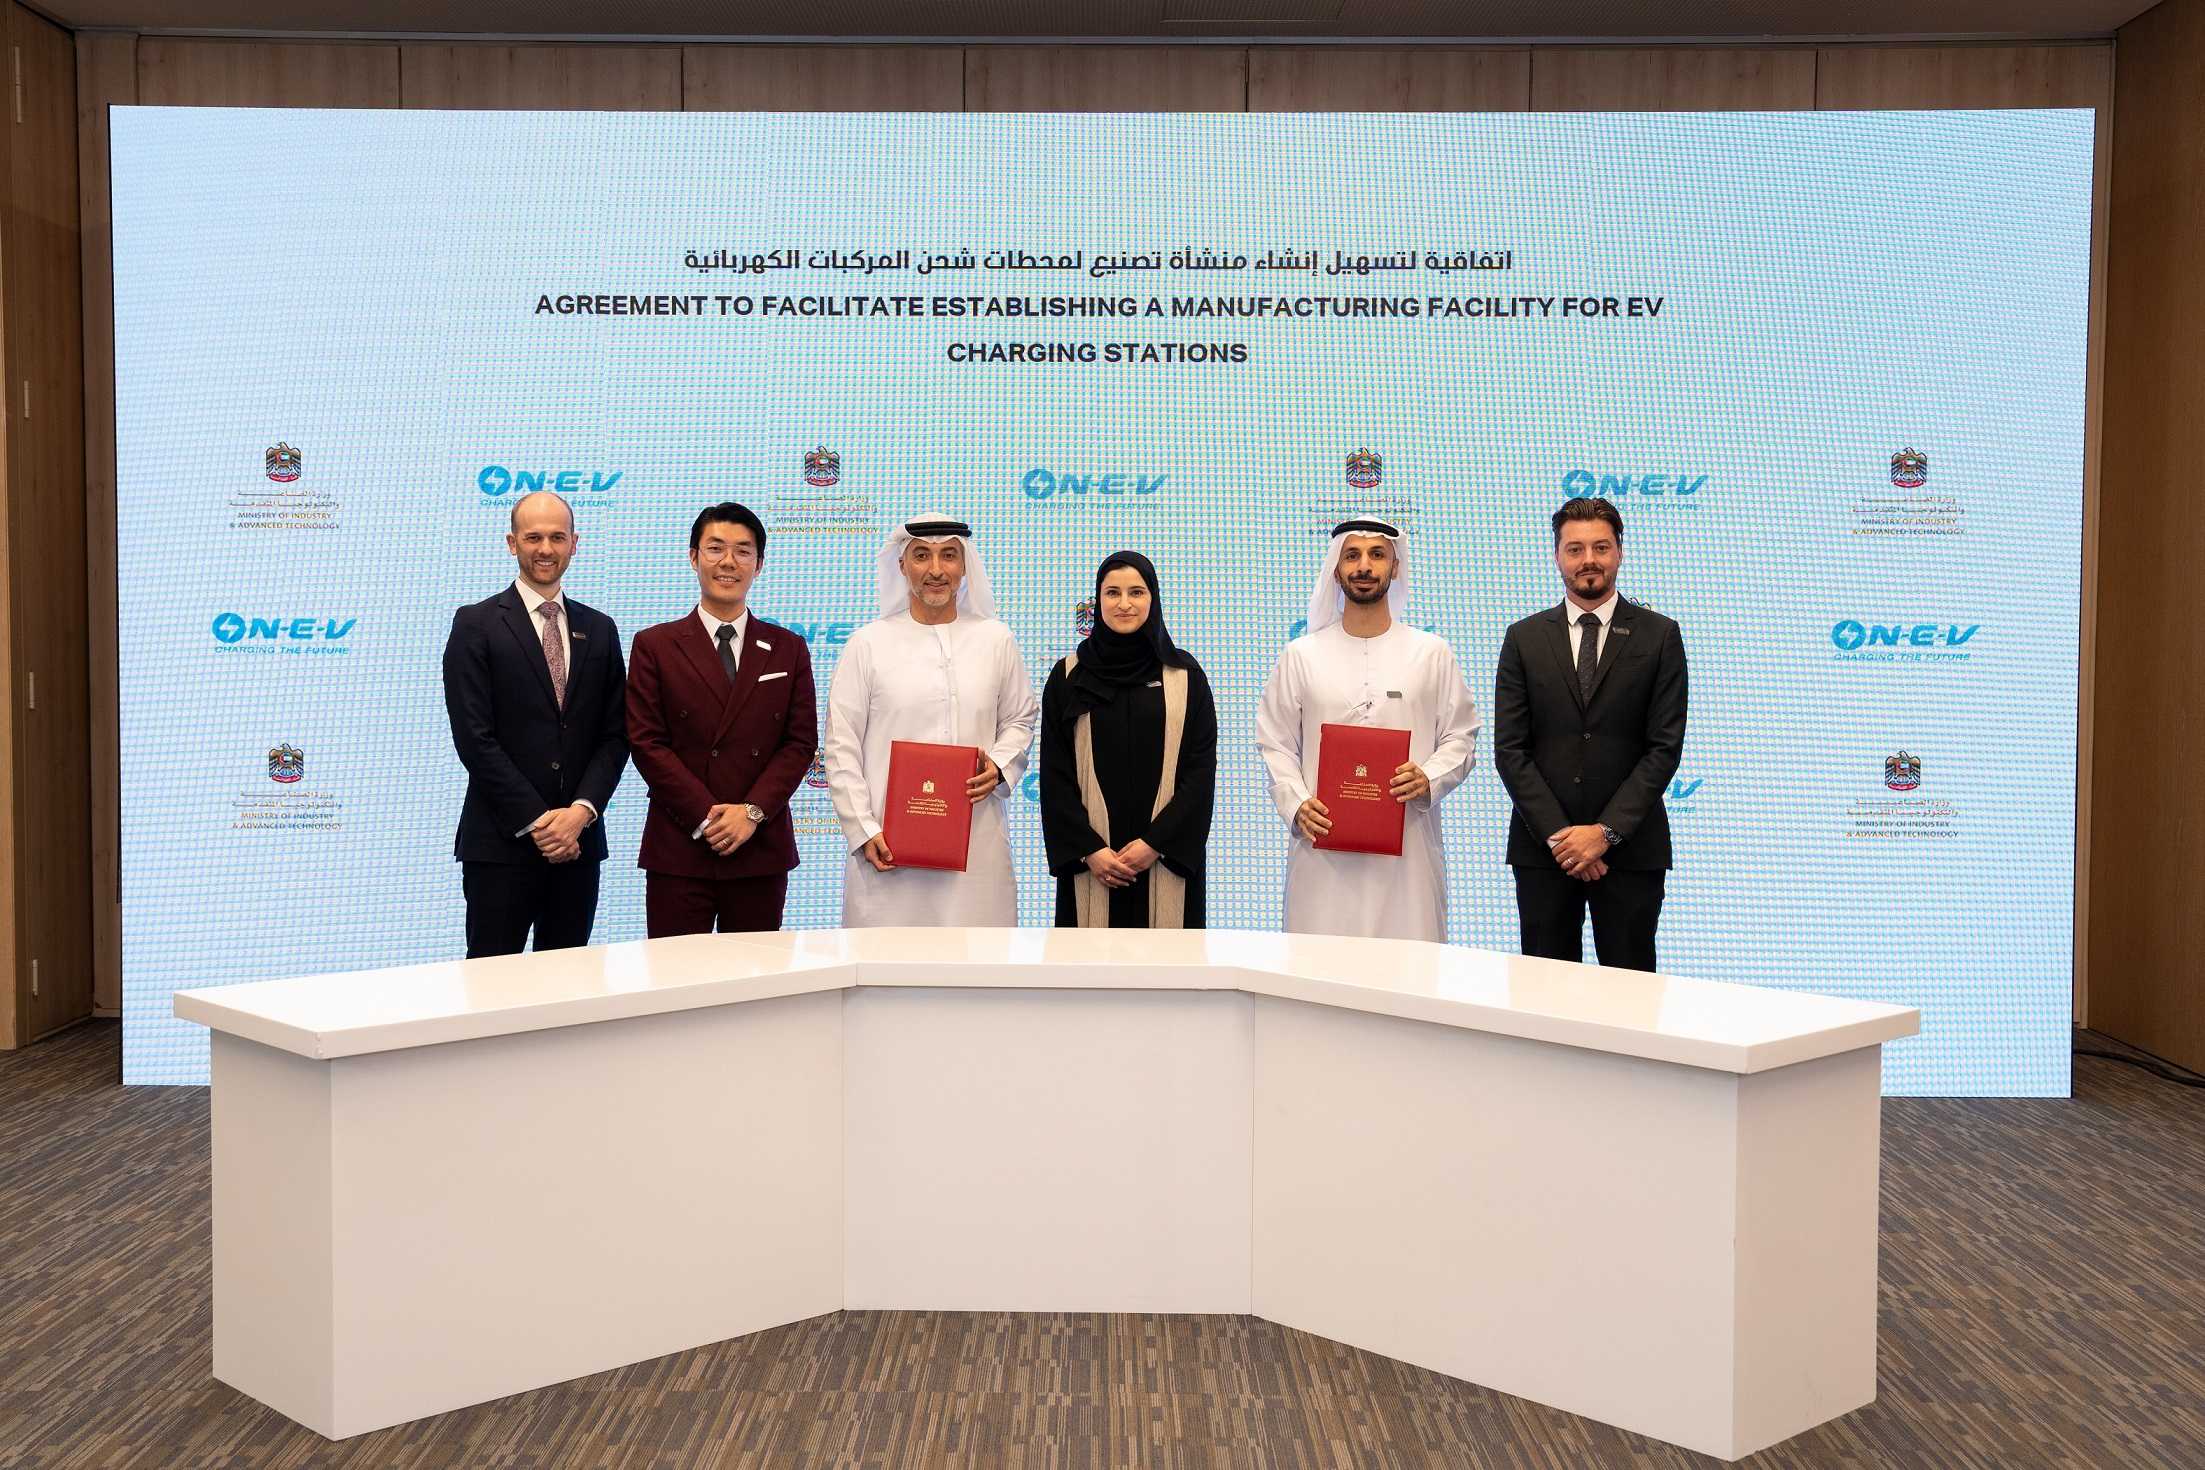 "الصناعة والتكنولوجيا المتقدمة" وشركة "شاحن" يوقعان شراكة استراتيجية لتعزيز التحول نحو التنقل الأخضر في الإمارات
